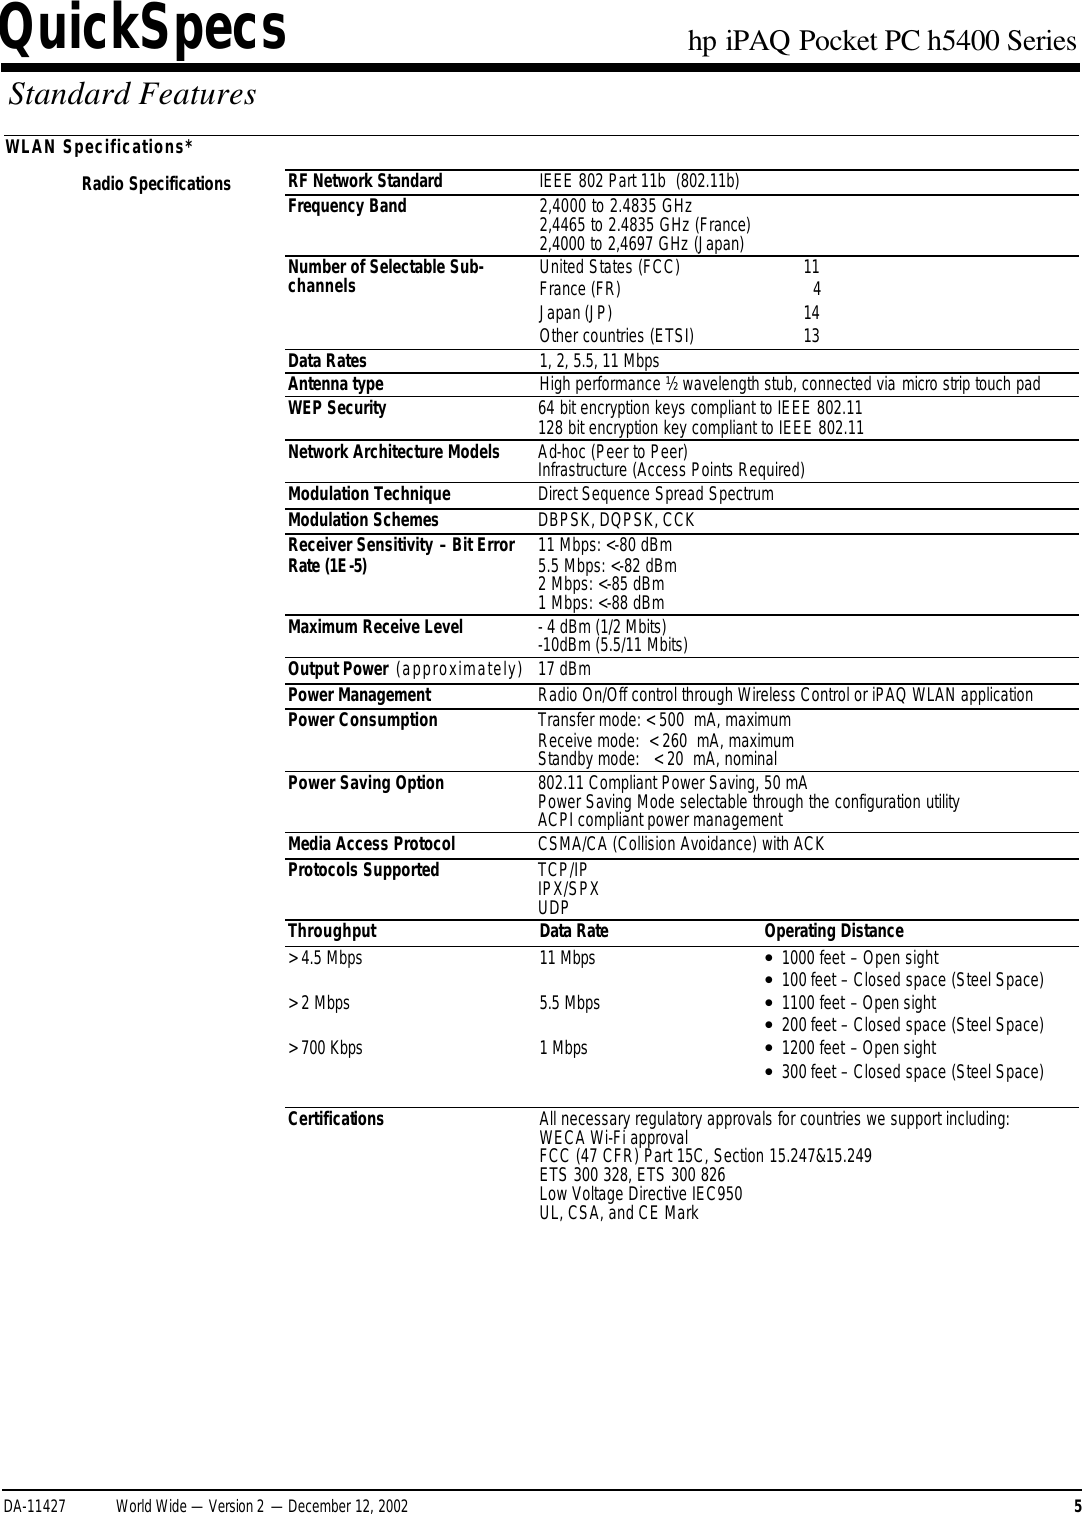 Page 5 of 11 - HP IPAQ Pocket PC H5400 Series - QuickSpecs Overview I PAQ Quick Specs Lpia8003